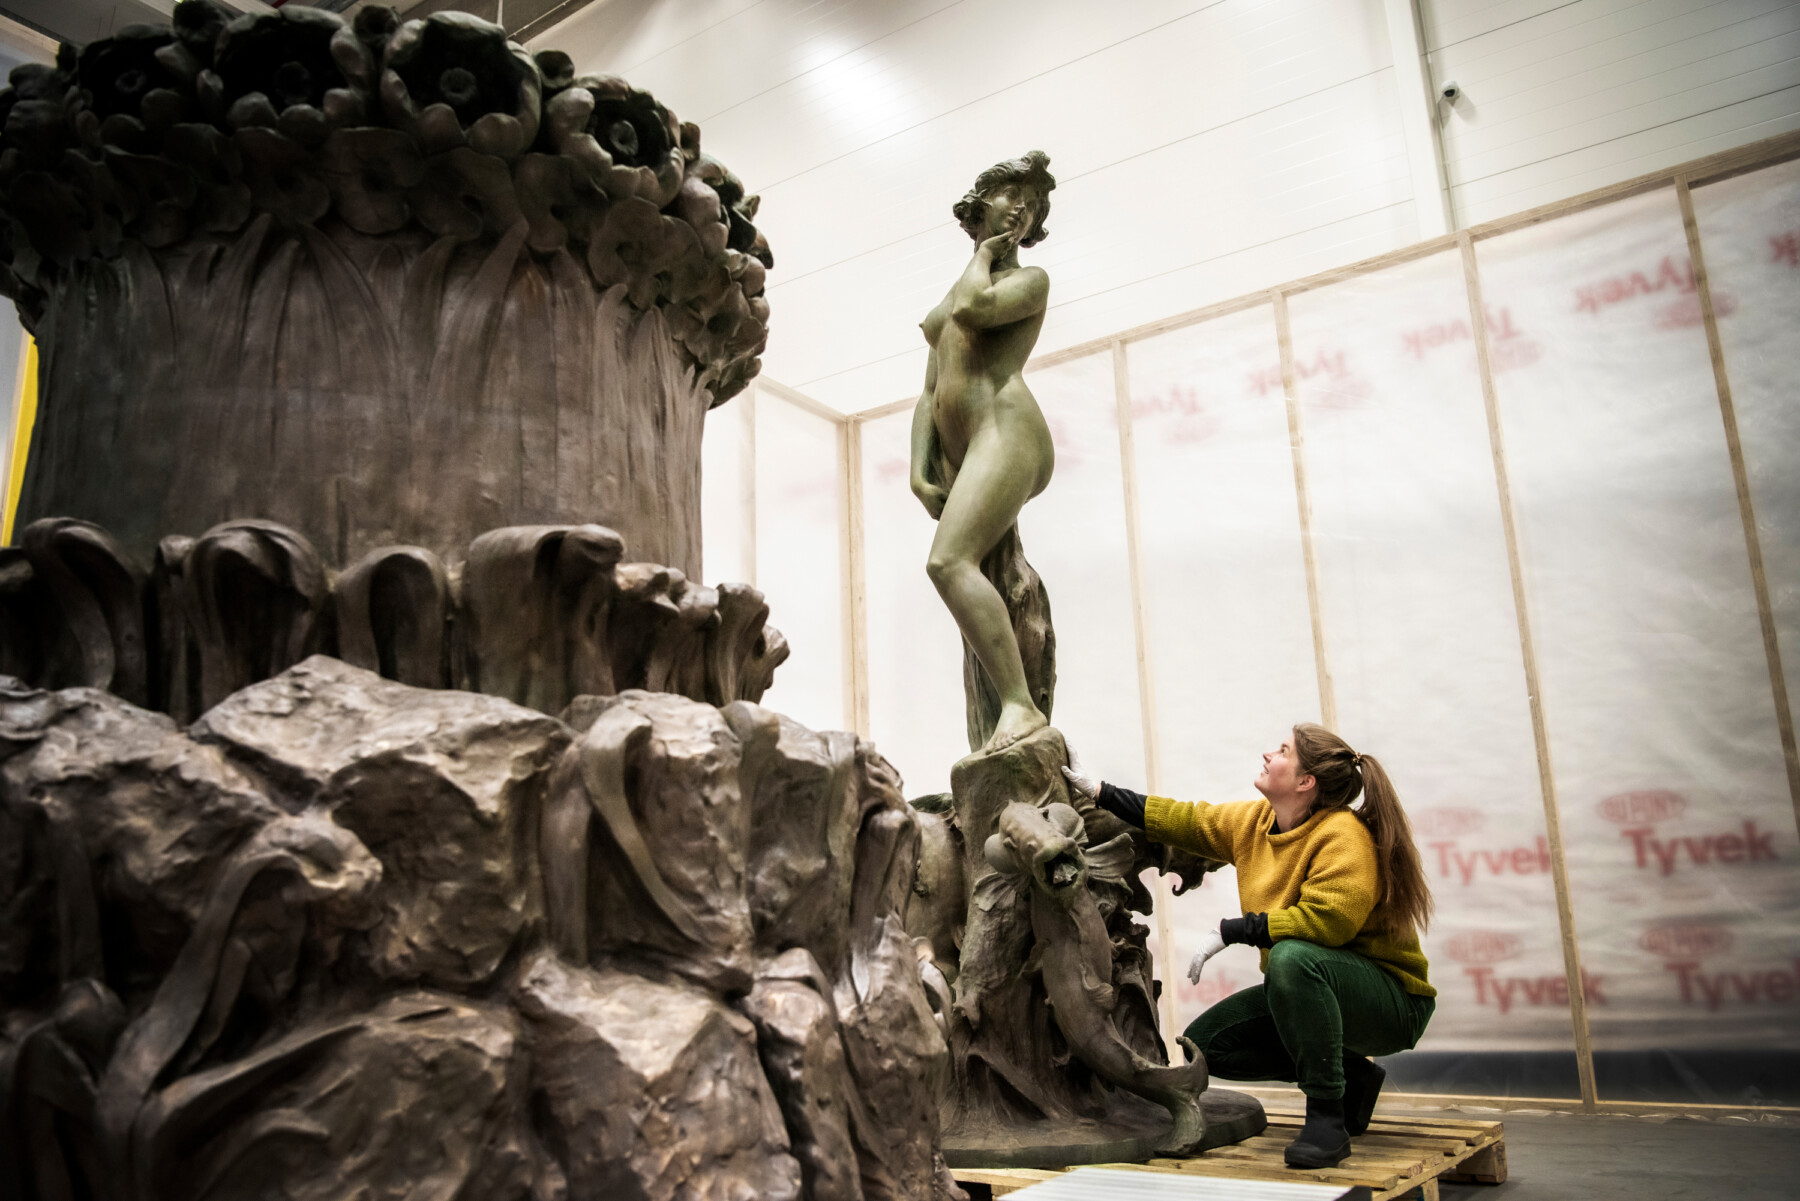 En un taller, una mujer está arrodillada observando el pedestal de una estatua de bronce que representa una figura femenina.